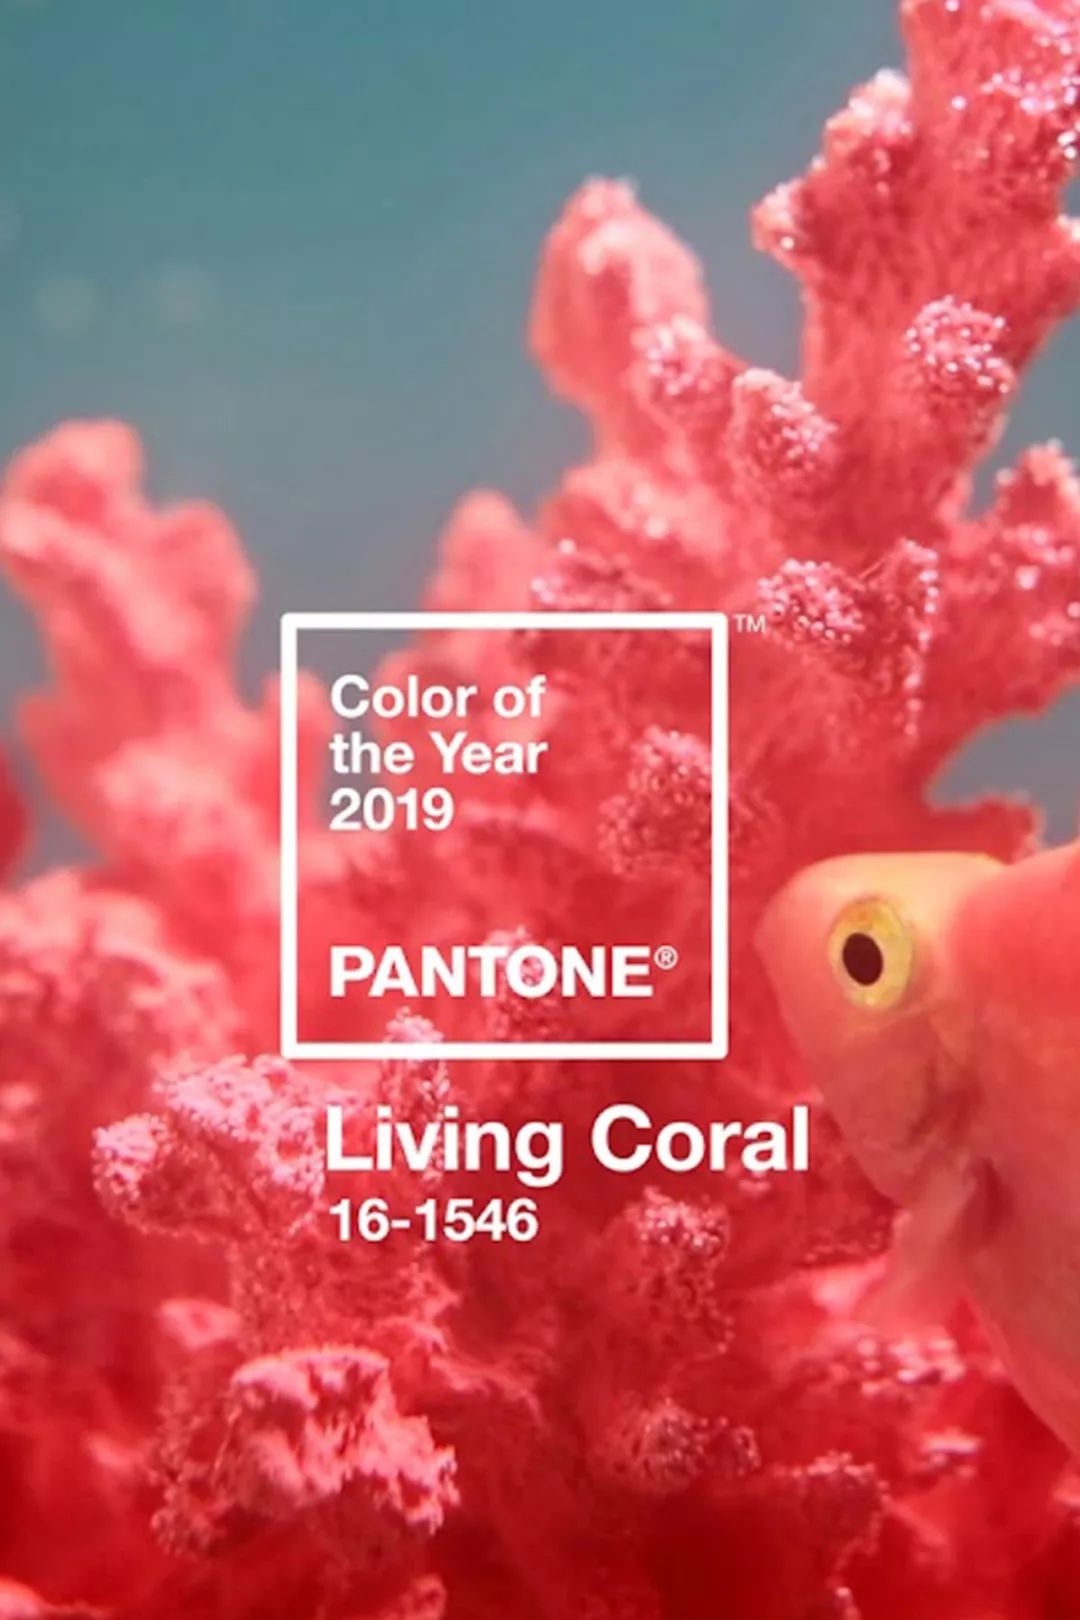 登登登,珊瑚色 living coral,有个好听的中文名字